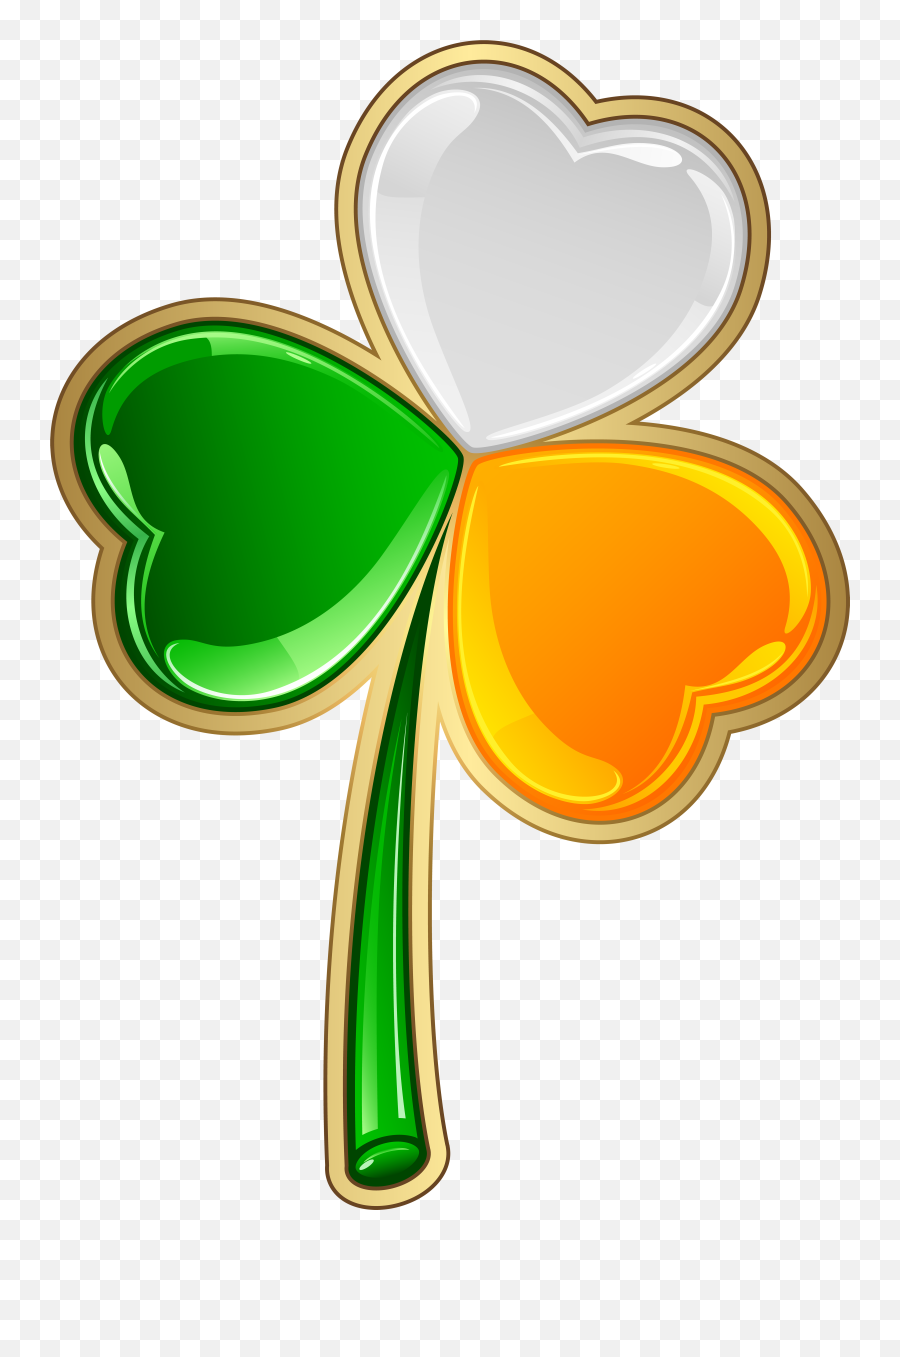 Irish Ireland People Patricks Shamrock - Irish Shamrock Clear Background Emoji,Shamrock Emoticon